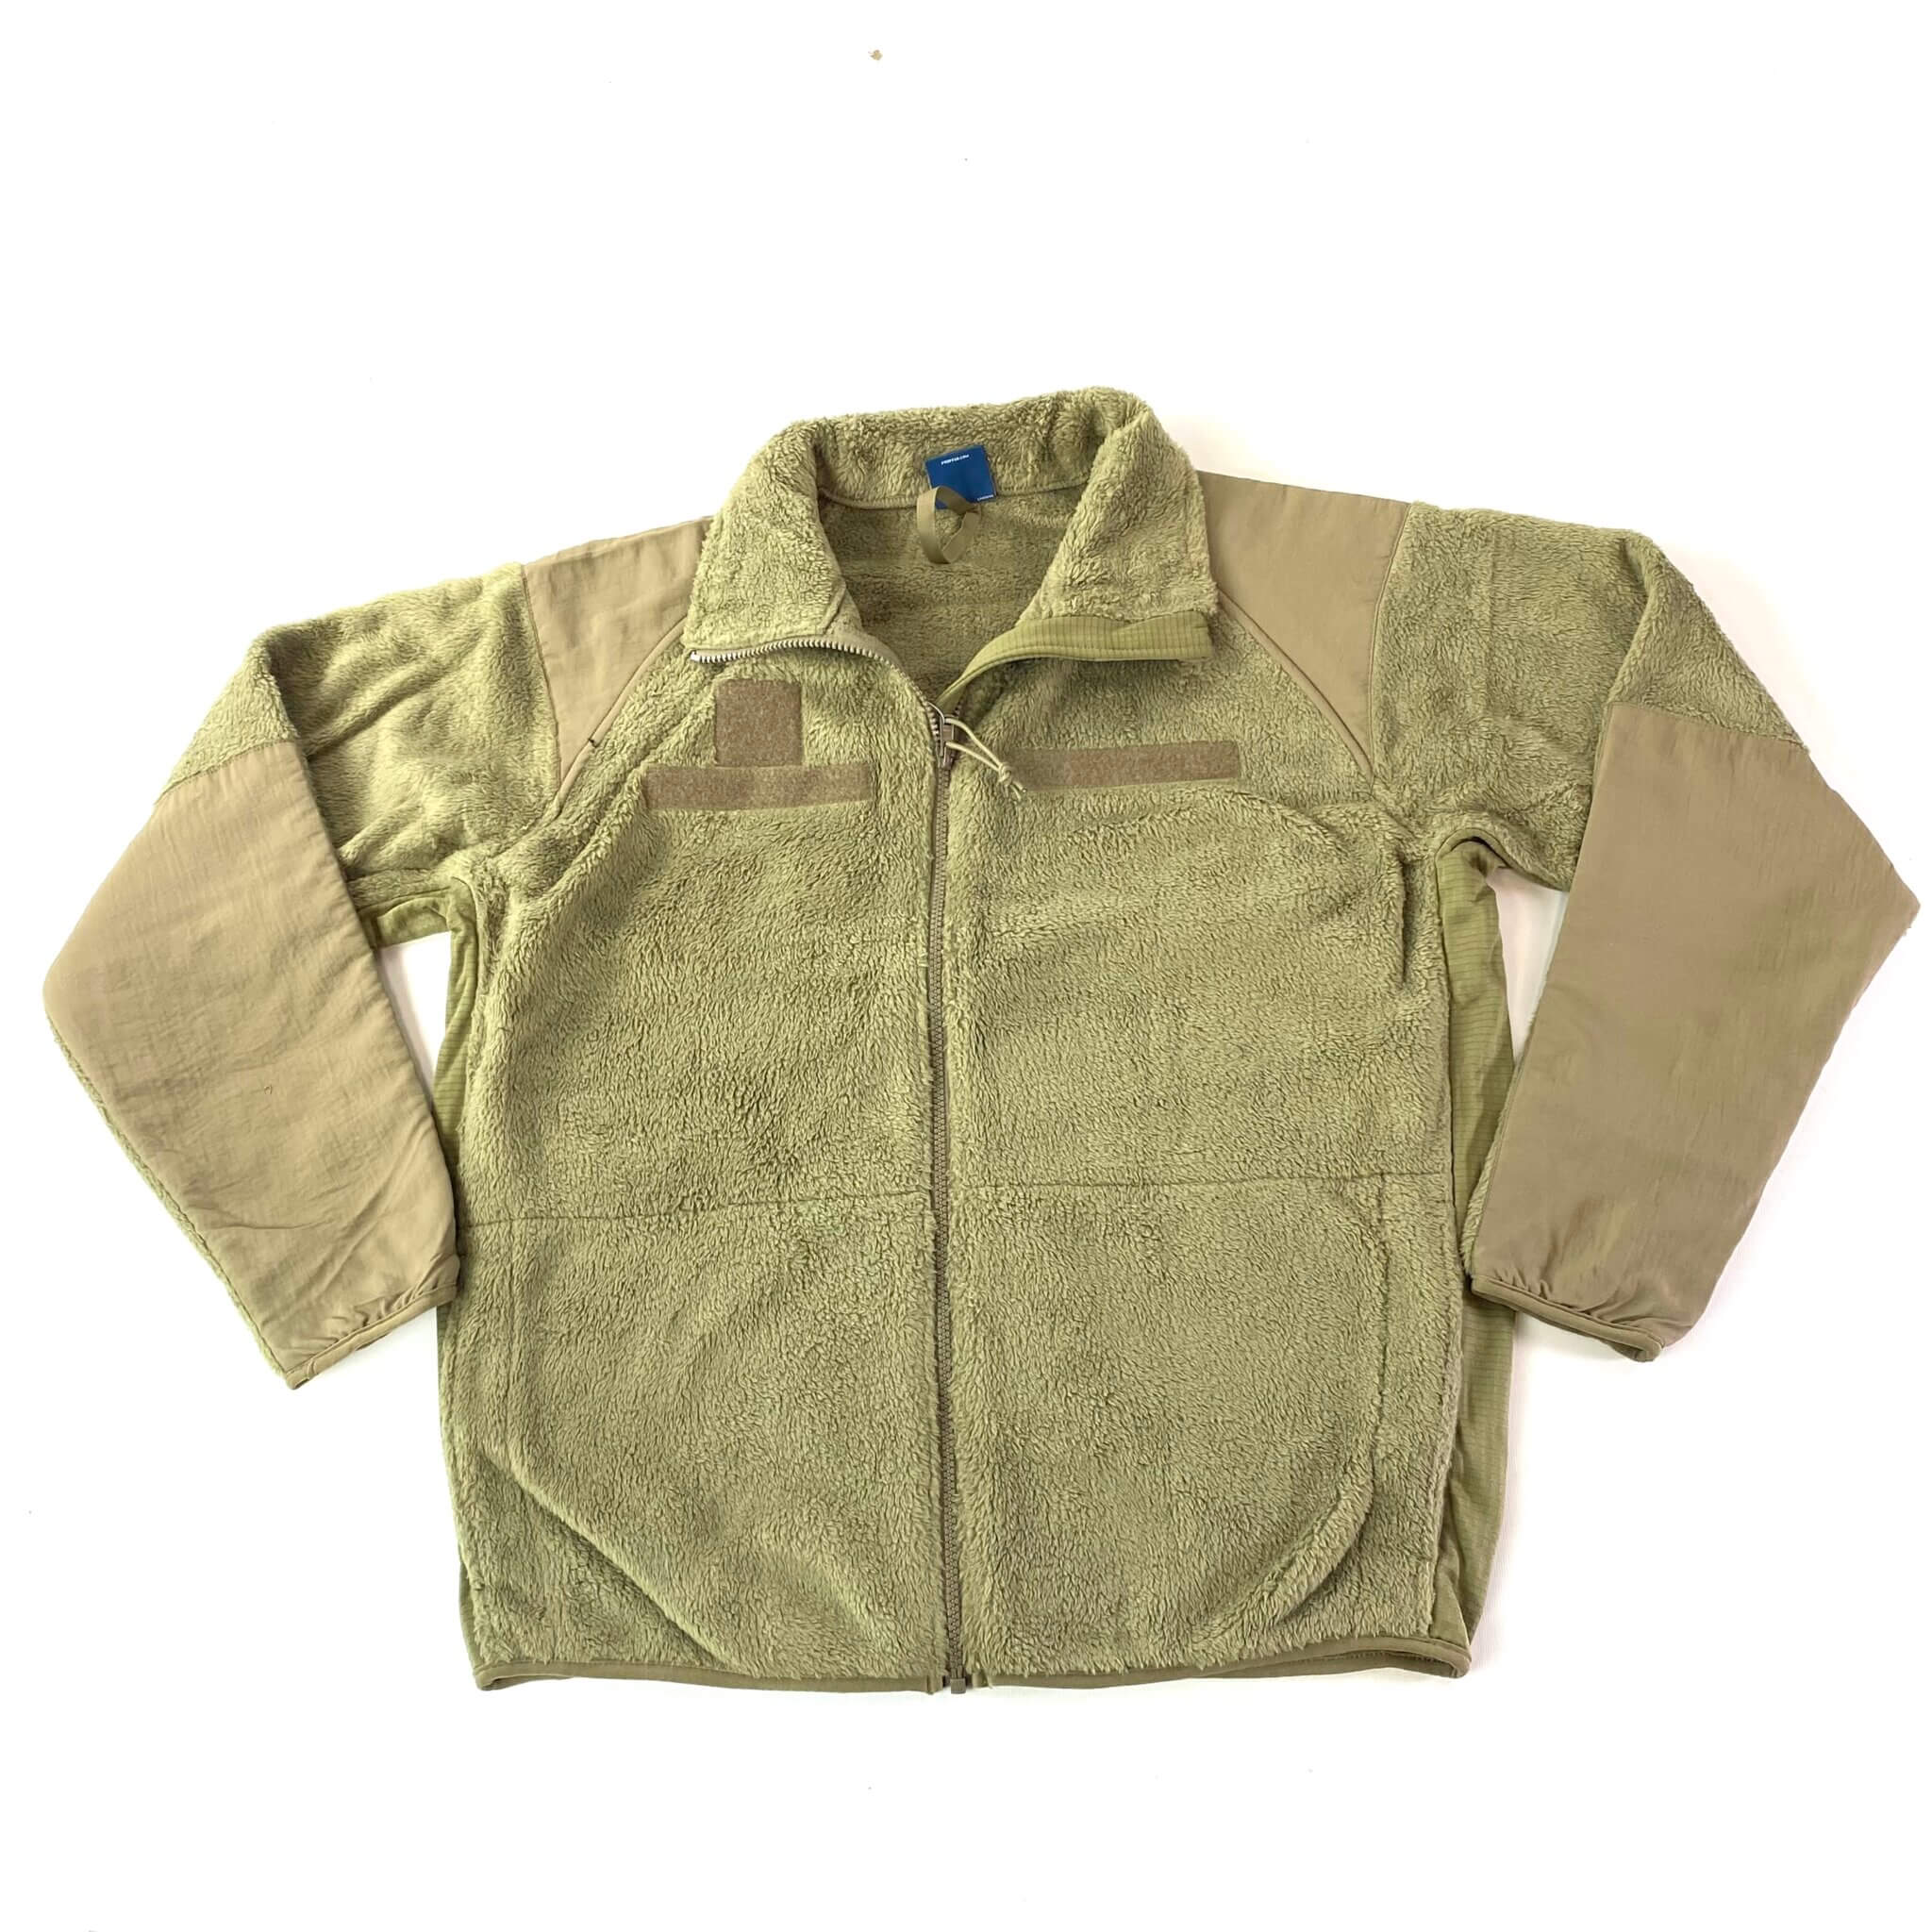 Propper® Gen III Fleece Jacket, Tan - Venture Surplus